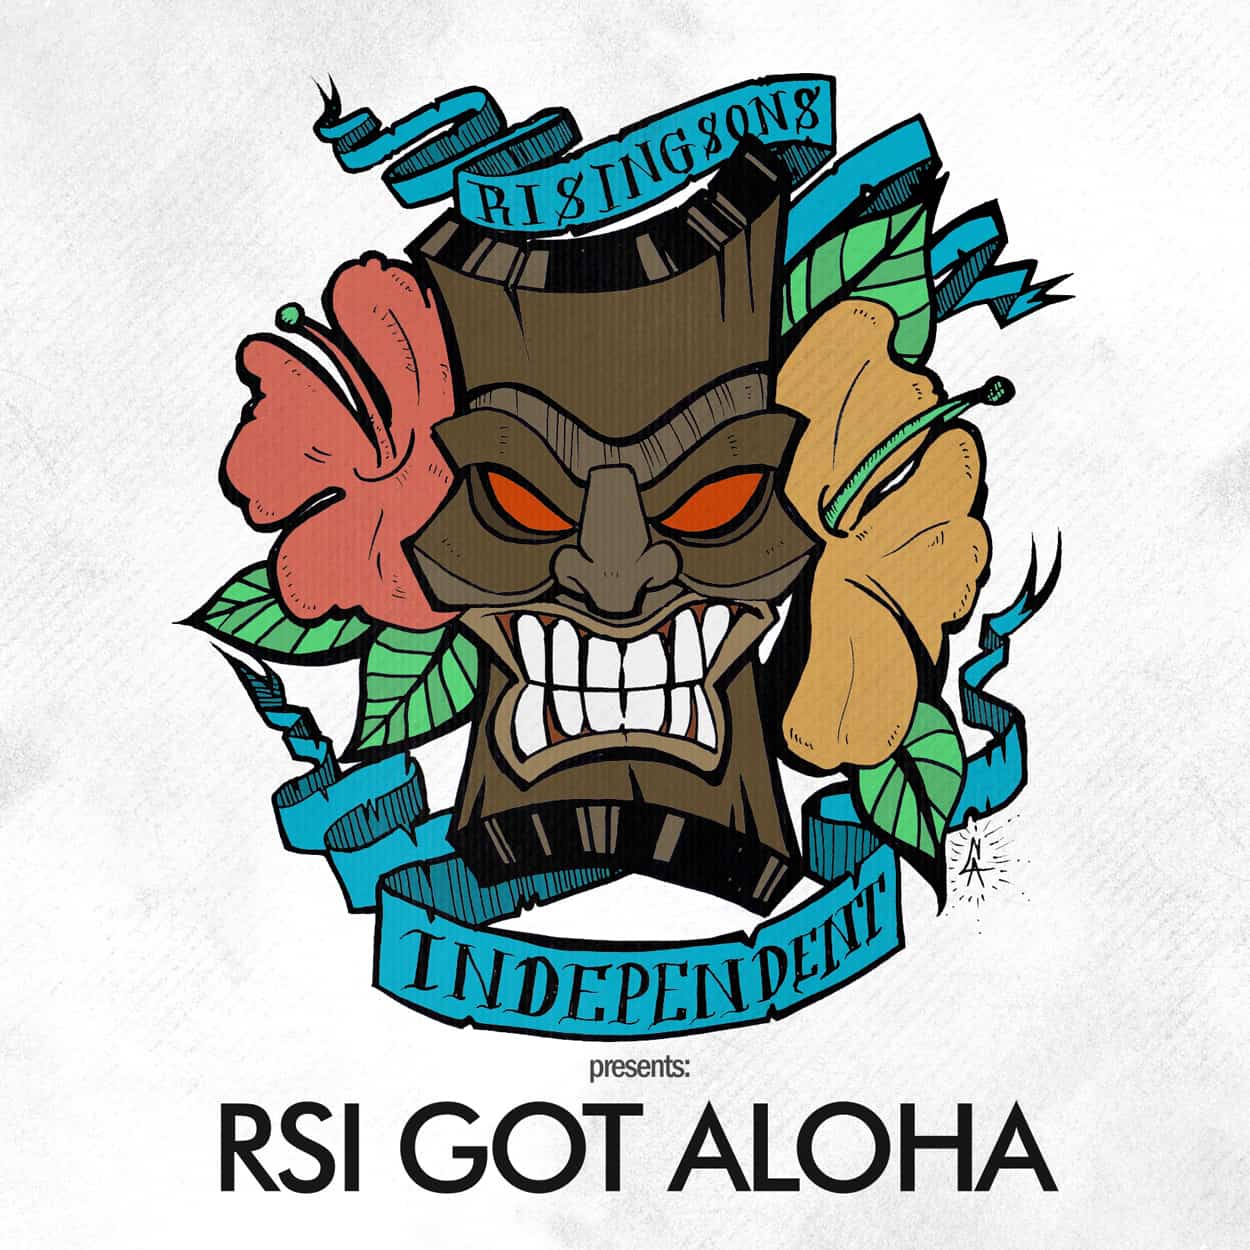 rsi got aloha - album art design